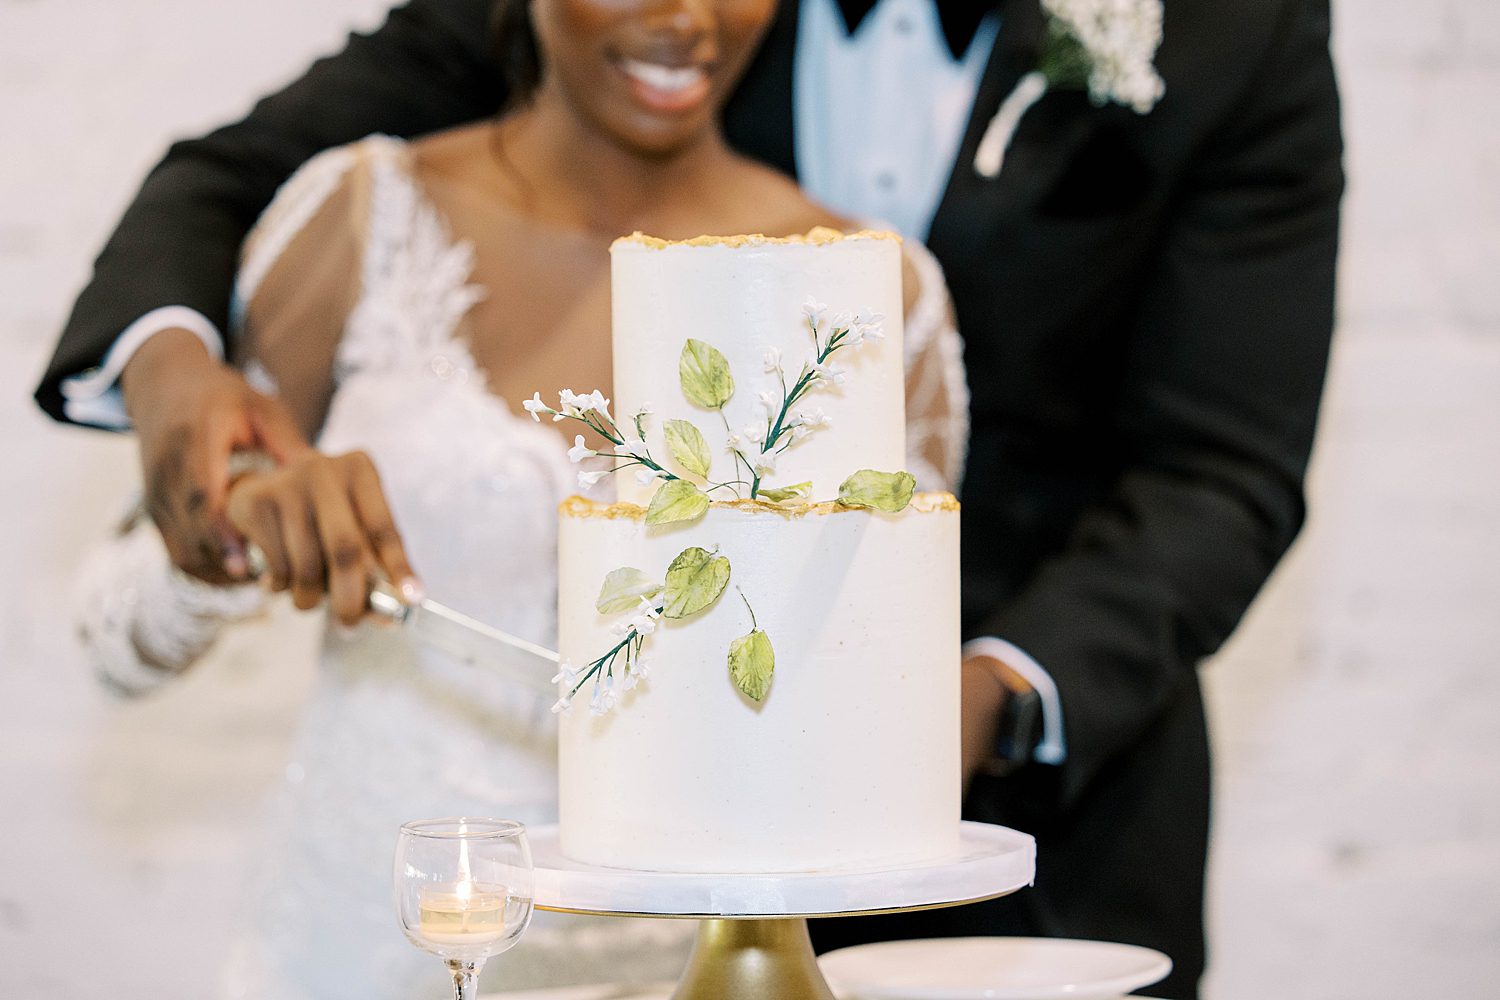 bride and groom cut wedding cake during FL wedding reception